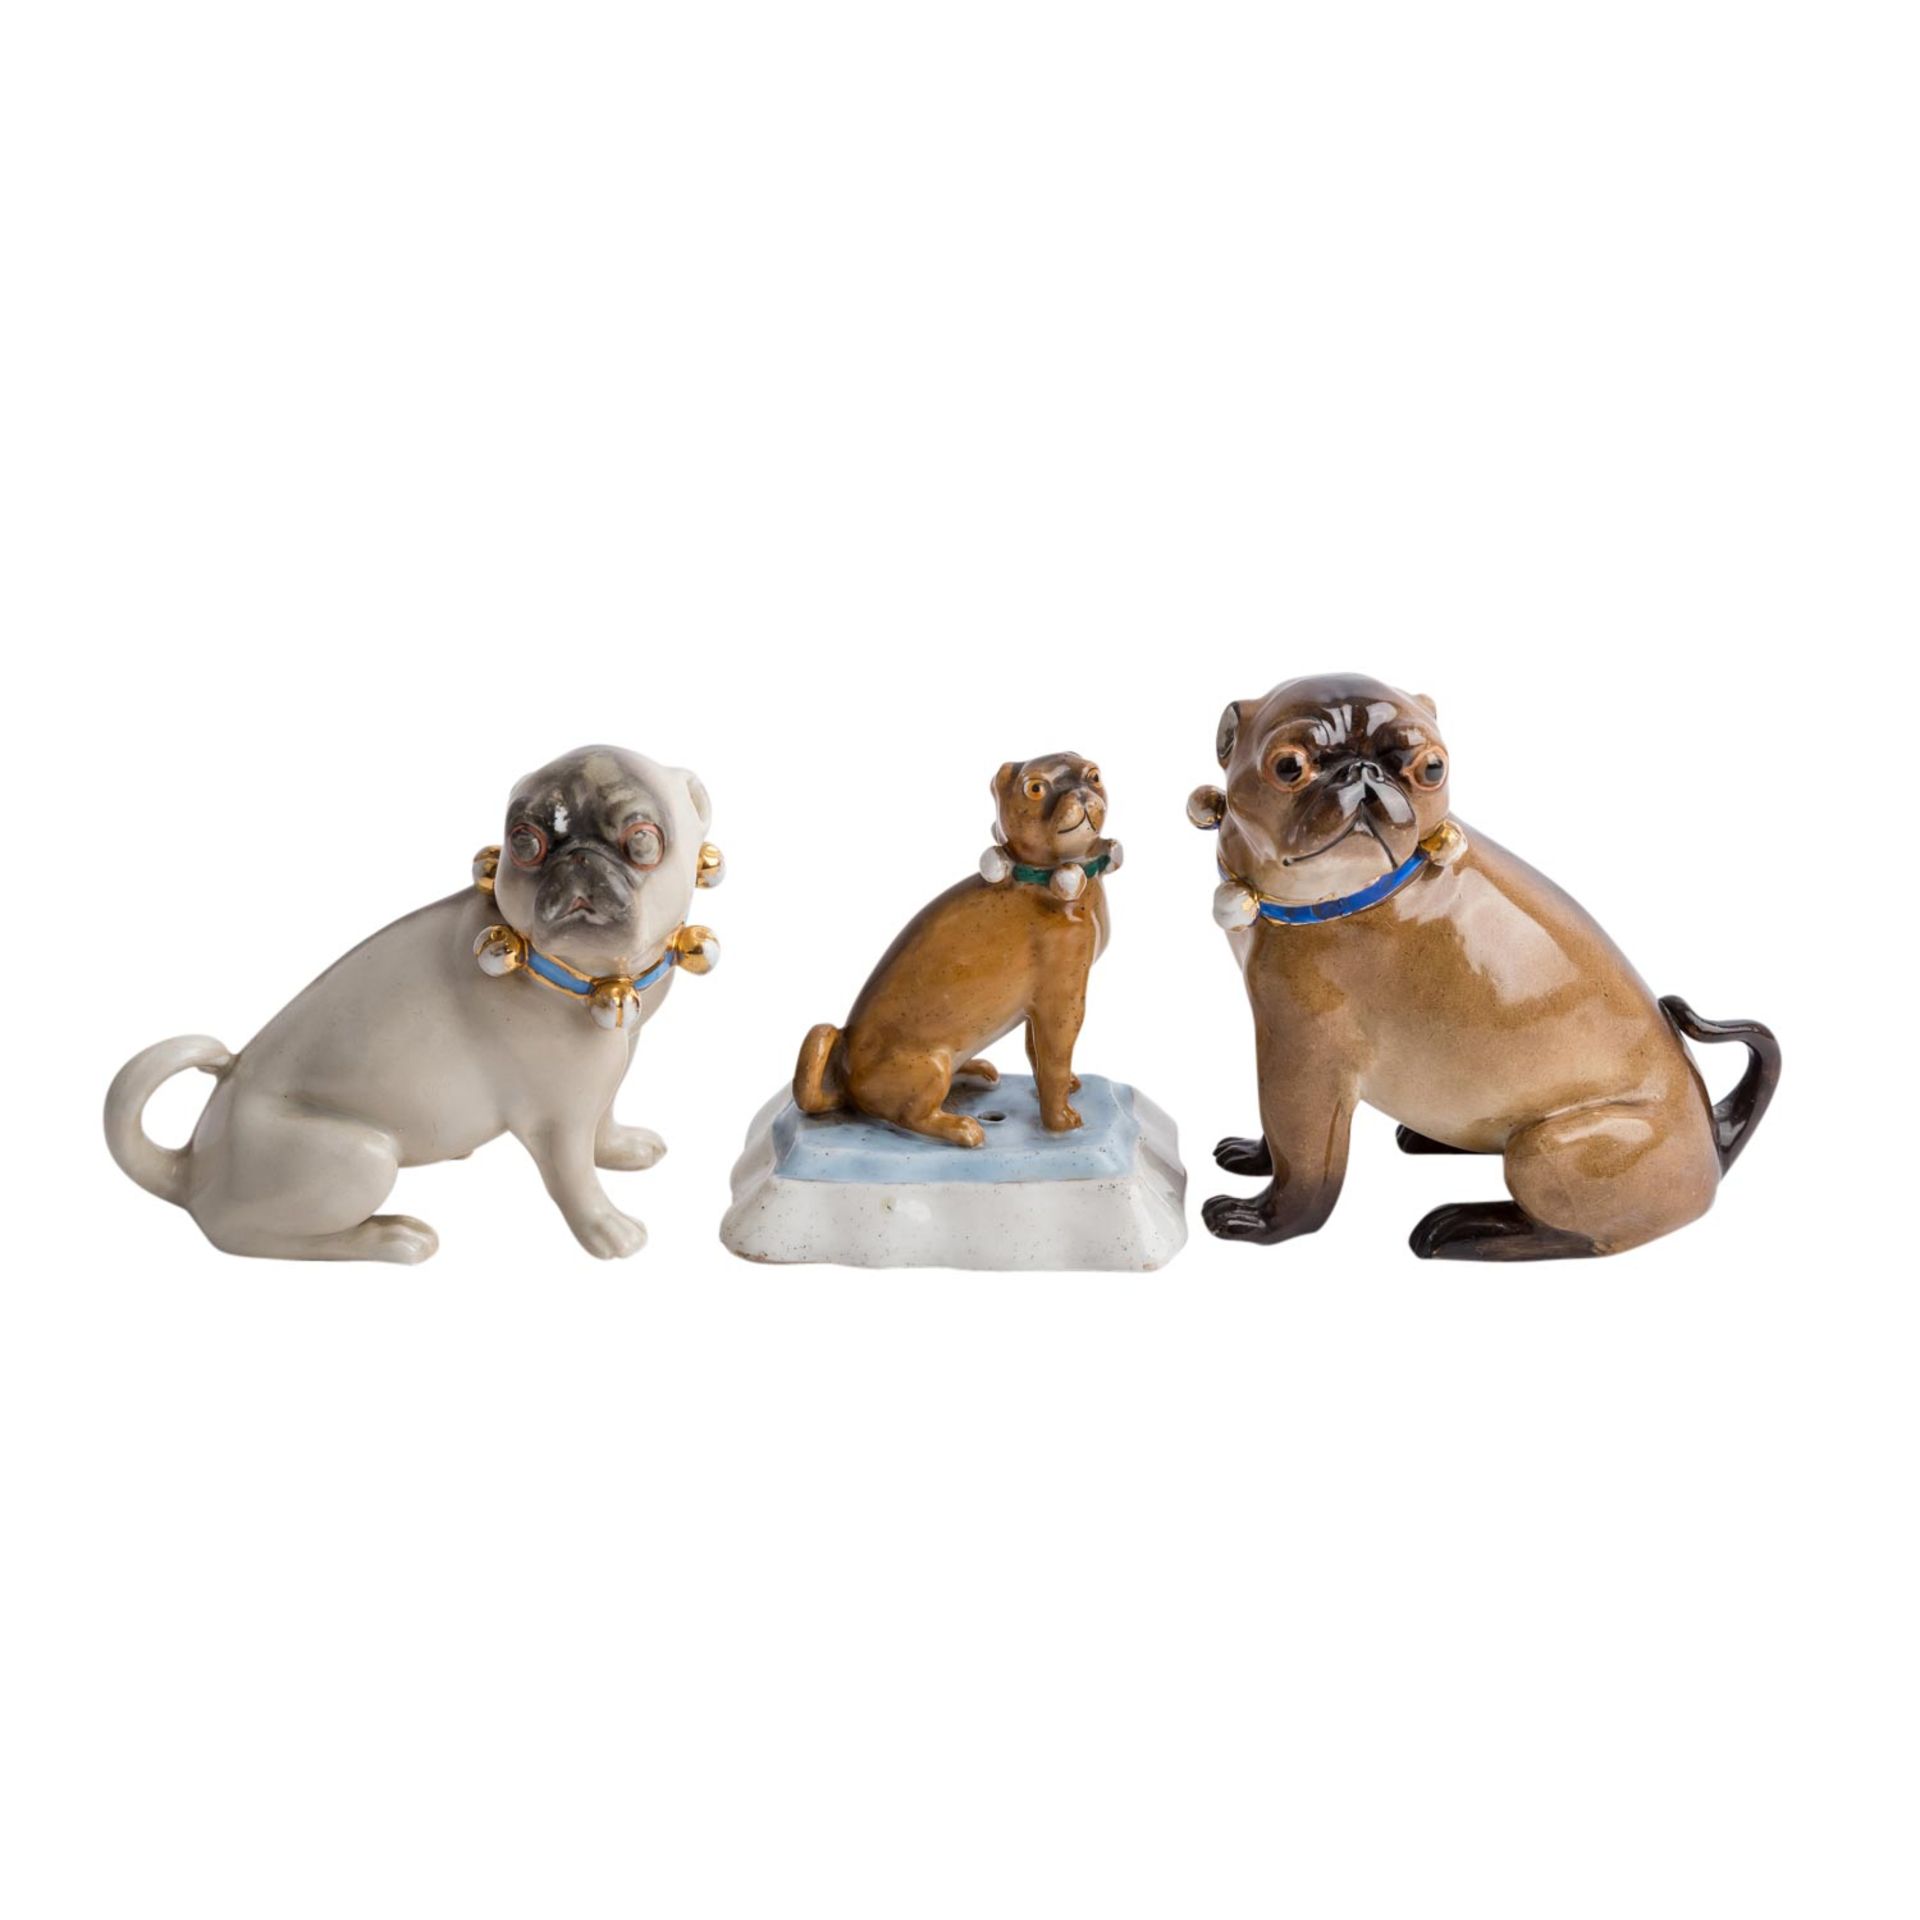 5tlg. Konvolut Tierfiguren "Mops", 20. Jh.Bestehend aus 3 sitzenden Mopshunden mit Schellenhalsband, - Bild 3 aus 4